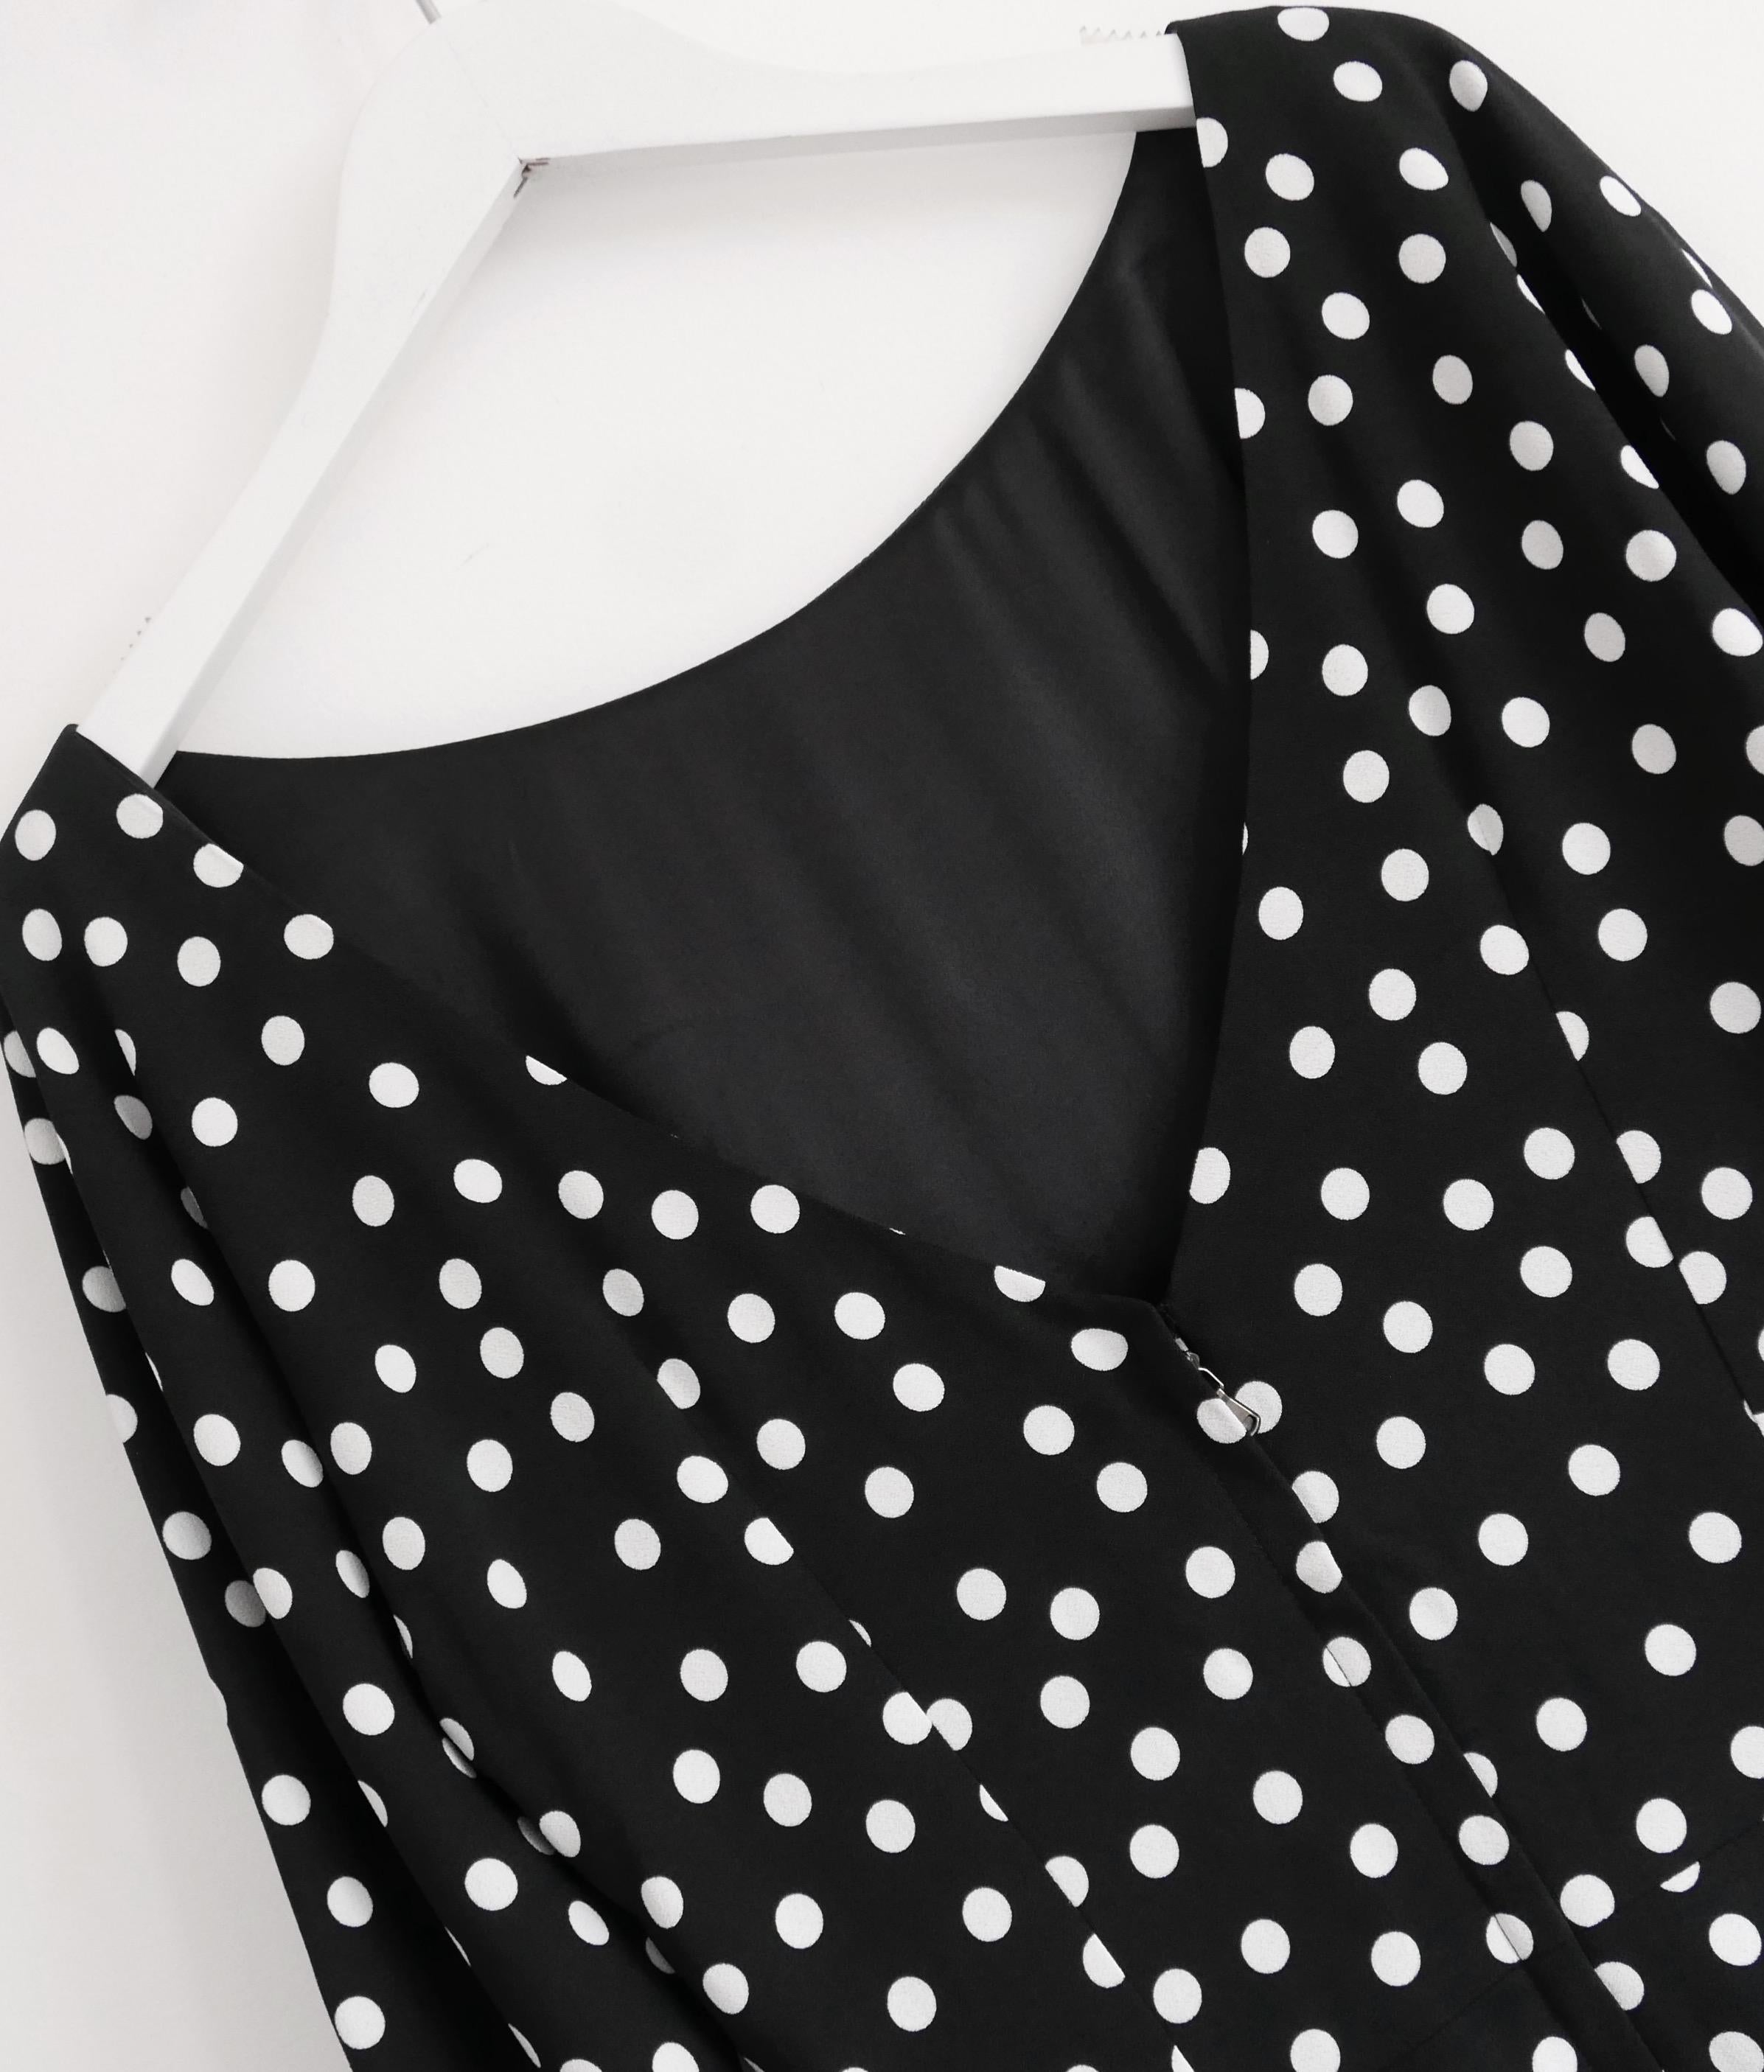 Dolce & Gabbana polka dot print sheath dress For Sale 2